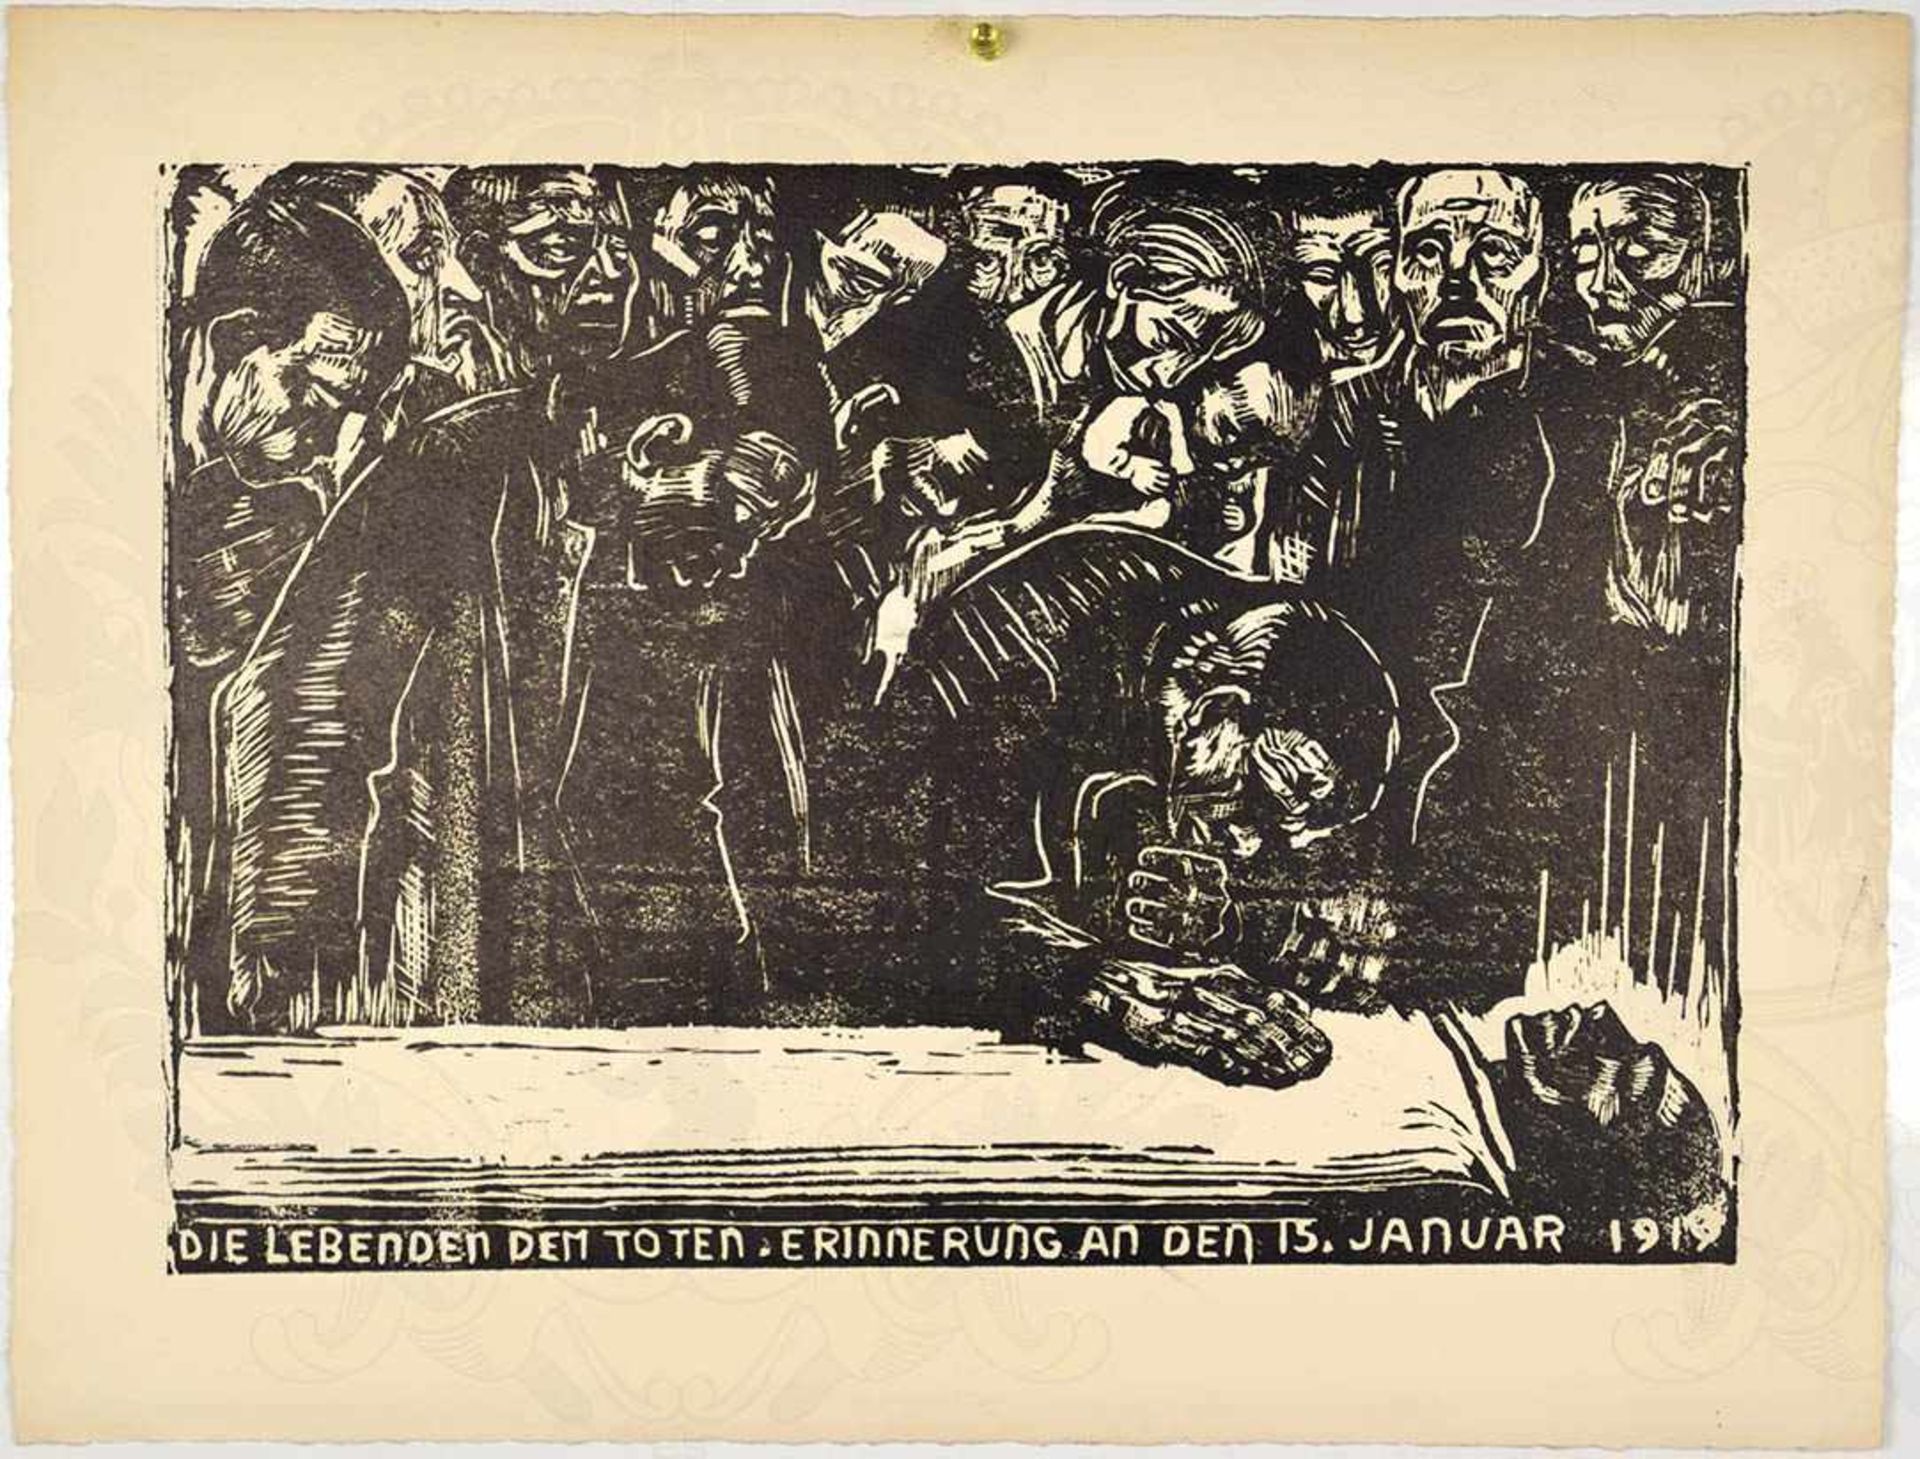 LINEOL-SCHNITT, „Die Lebenden dem Toten - Erinnerung an den 15. Januar 1919“, Menschenmenge an der